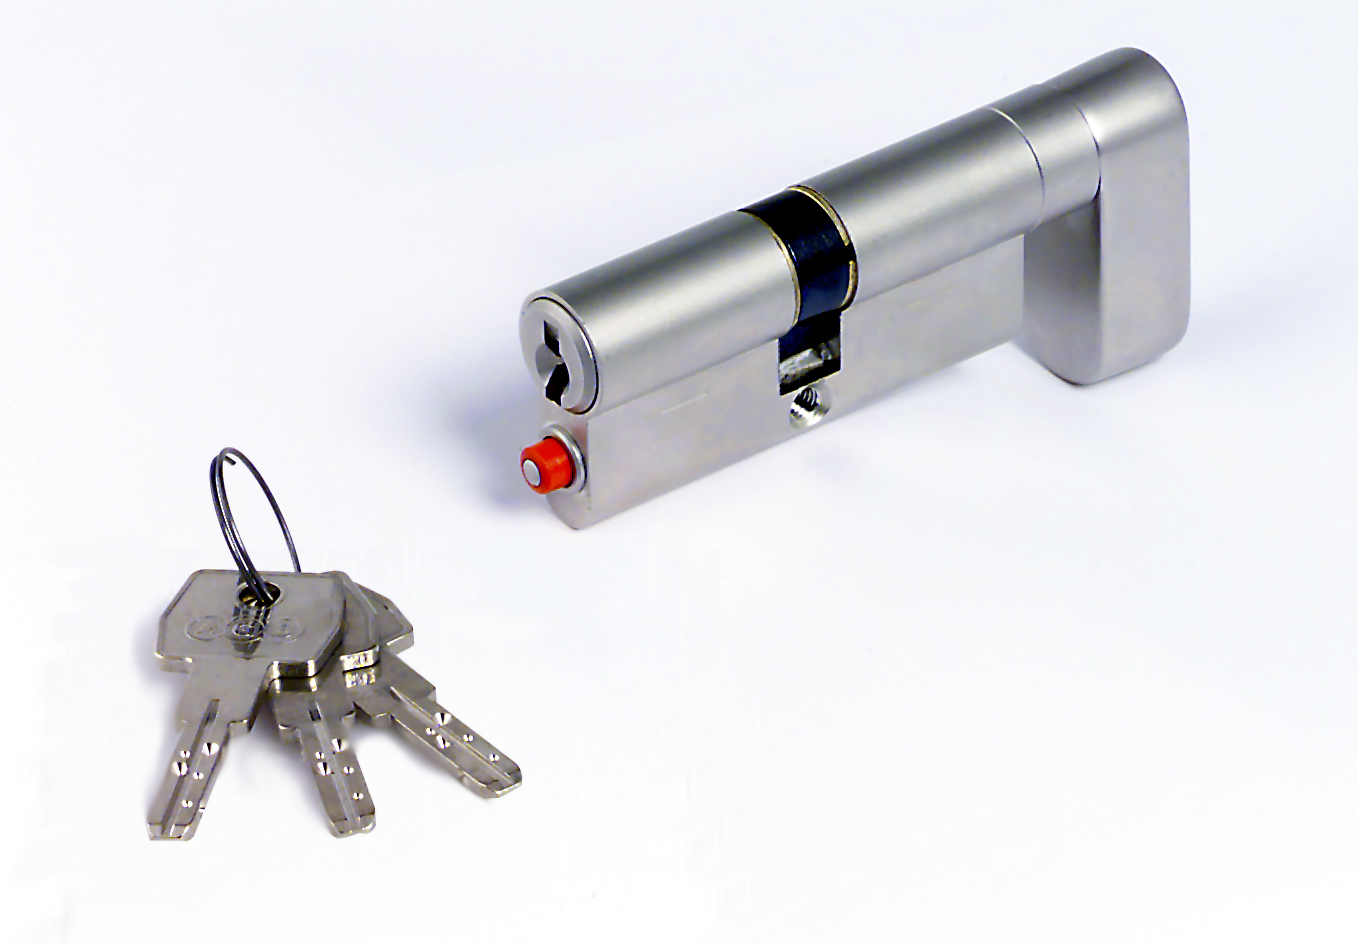 AGB -  Cilindro OPERA DQ - SL per porta tagliafuco a rotazione limitata con chiave e pomolo mk - a chiave maestra - col. NICHELATO LUCIDO - lunghezza 75 - misura P-30-10-35